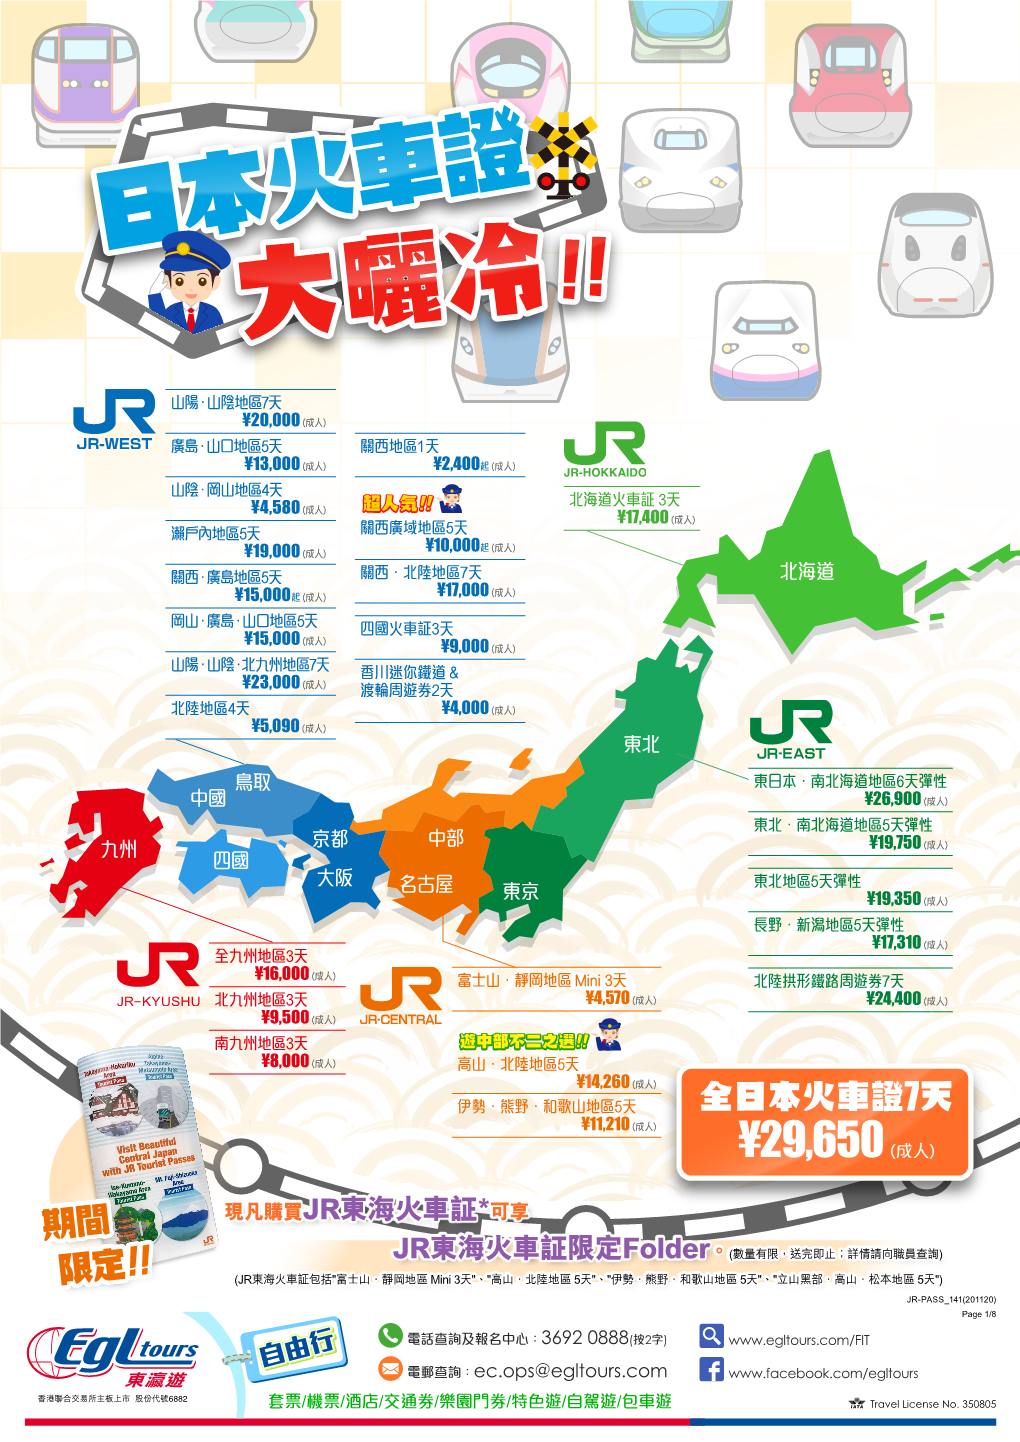 日本火車證7天 ¥11,210 (成人) ¥29,650 (成人)